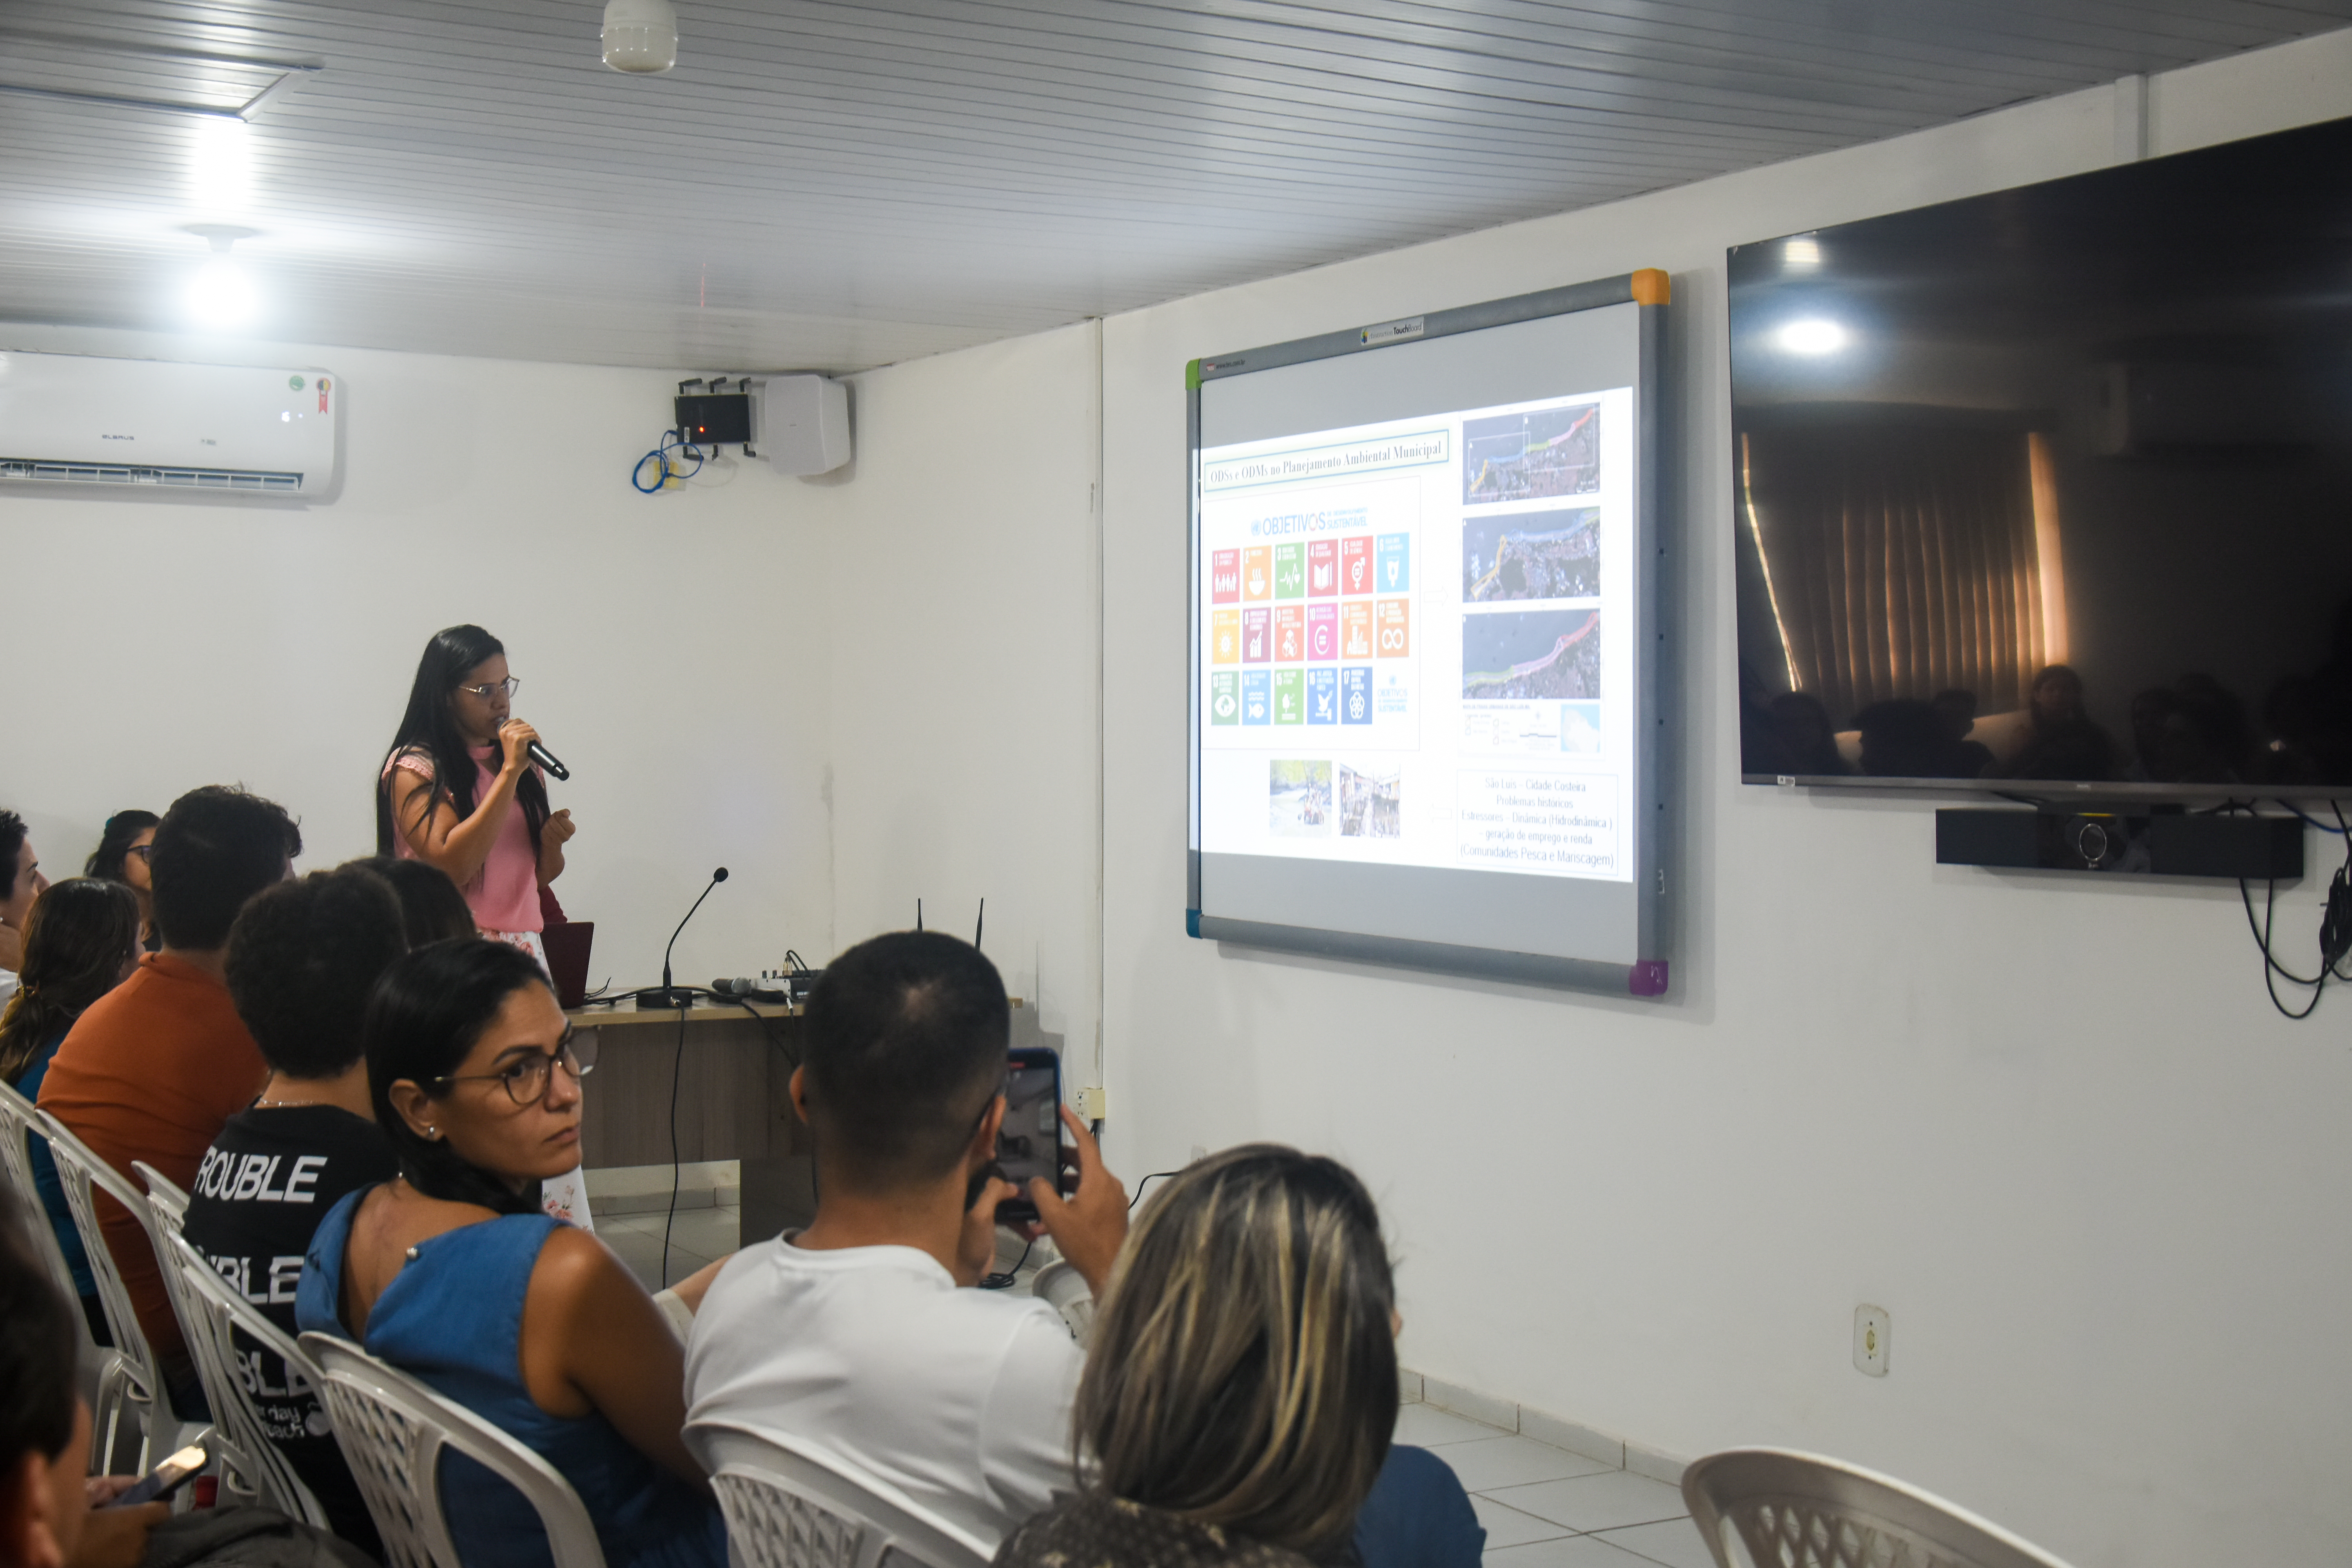 Plenária “Meio Ambiente da Ilha de São Luís” ocorreu na UFMA com a presença de pesquisadores da área e deputado Duarte Júnior